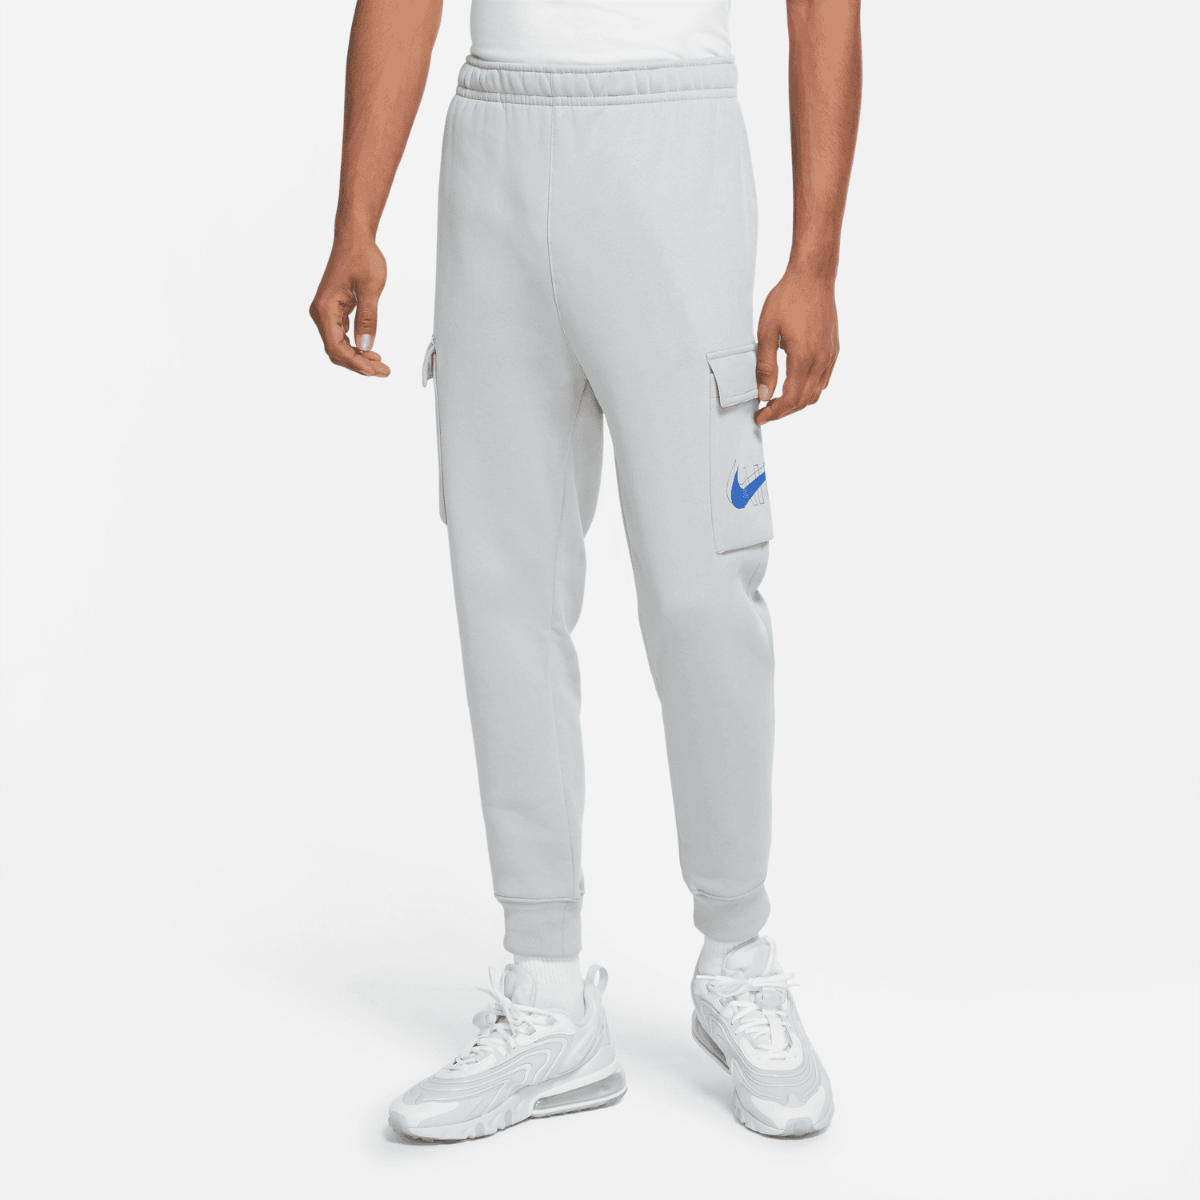 Nike Sportswear Cargo Pants - Grey/Blue